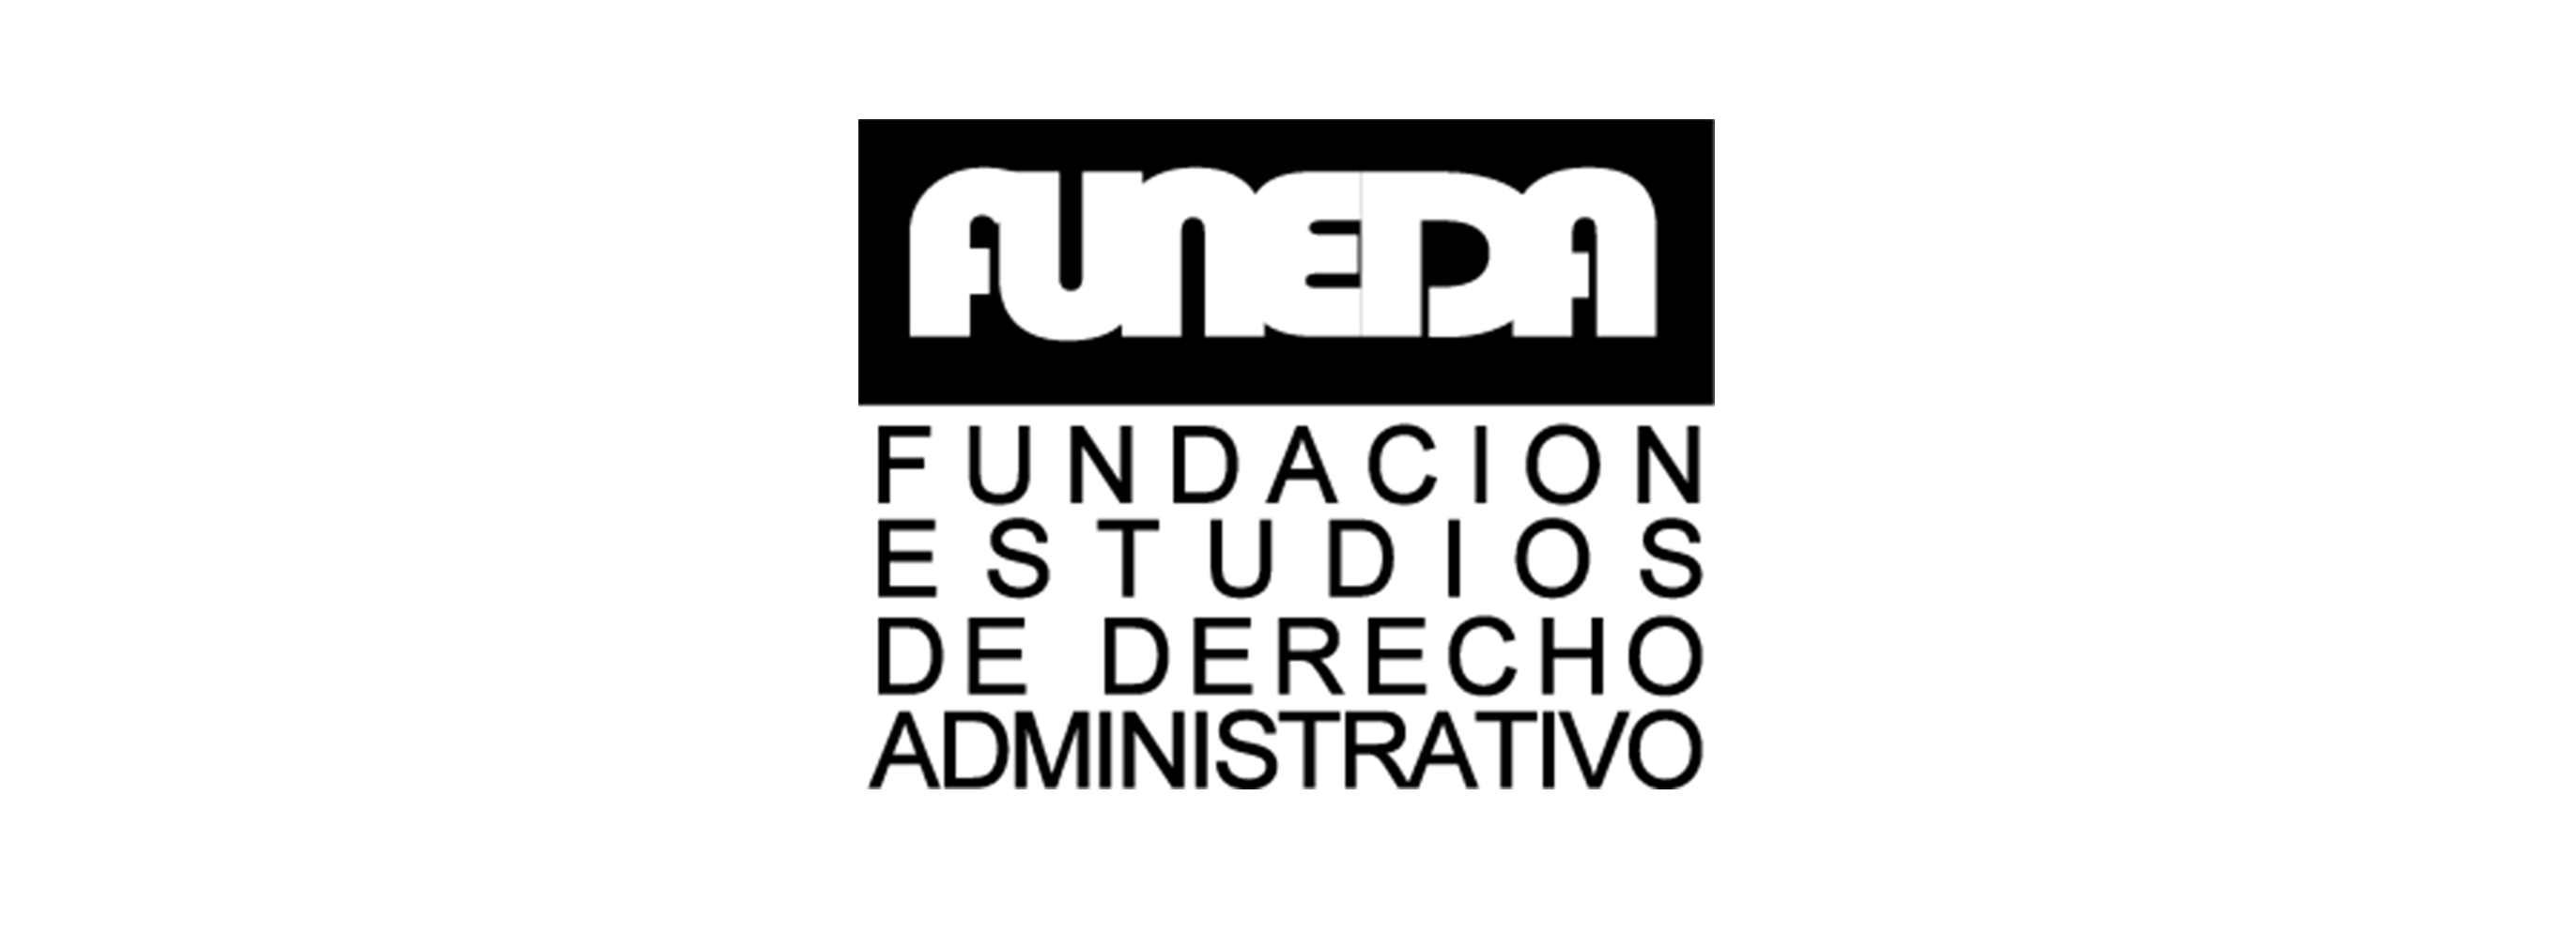 Funeda